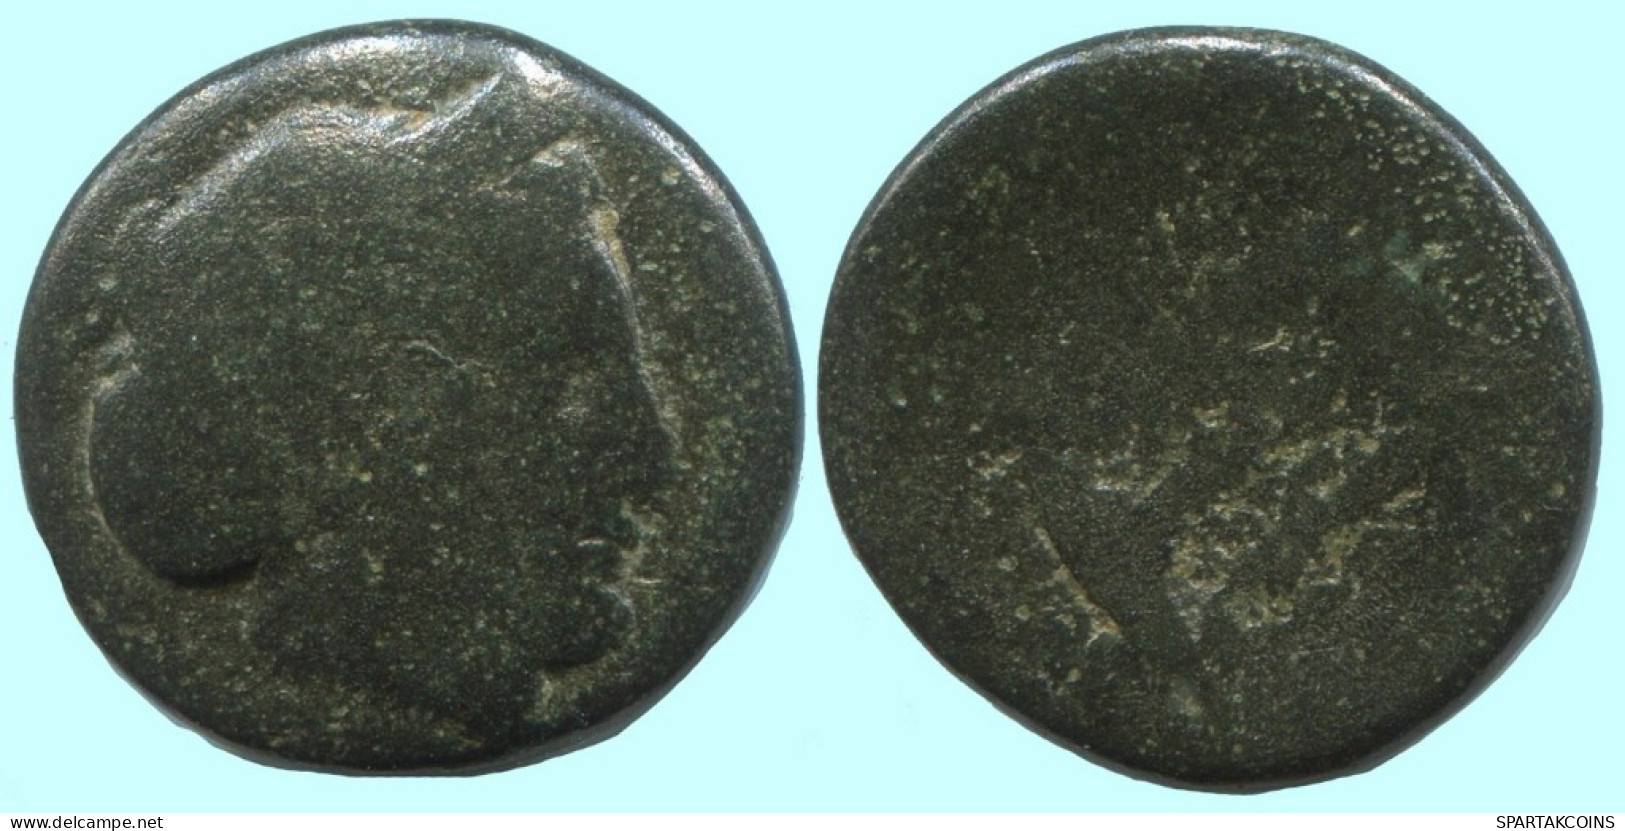 Auténtico ORIGINAL GRIEGO ANTIGUO Moneda 5g/17mm #AF947.12.E.A - Griekenland